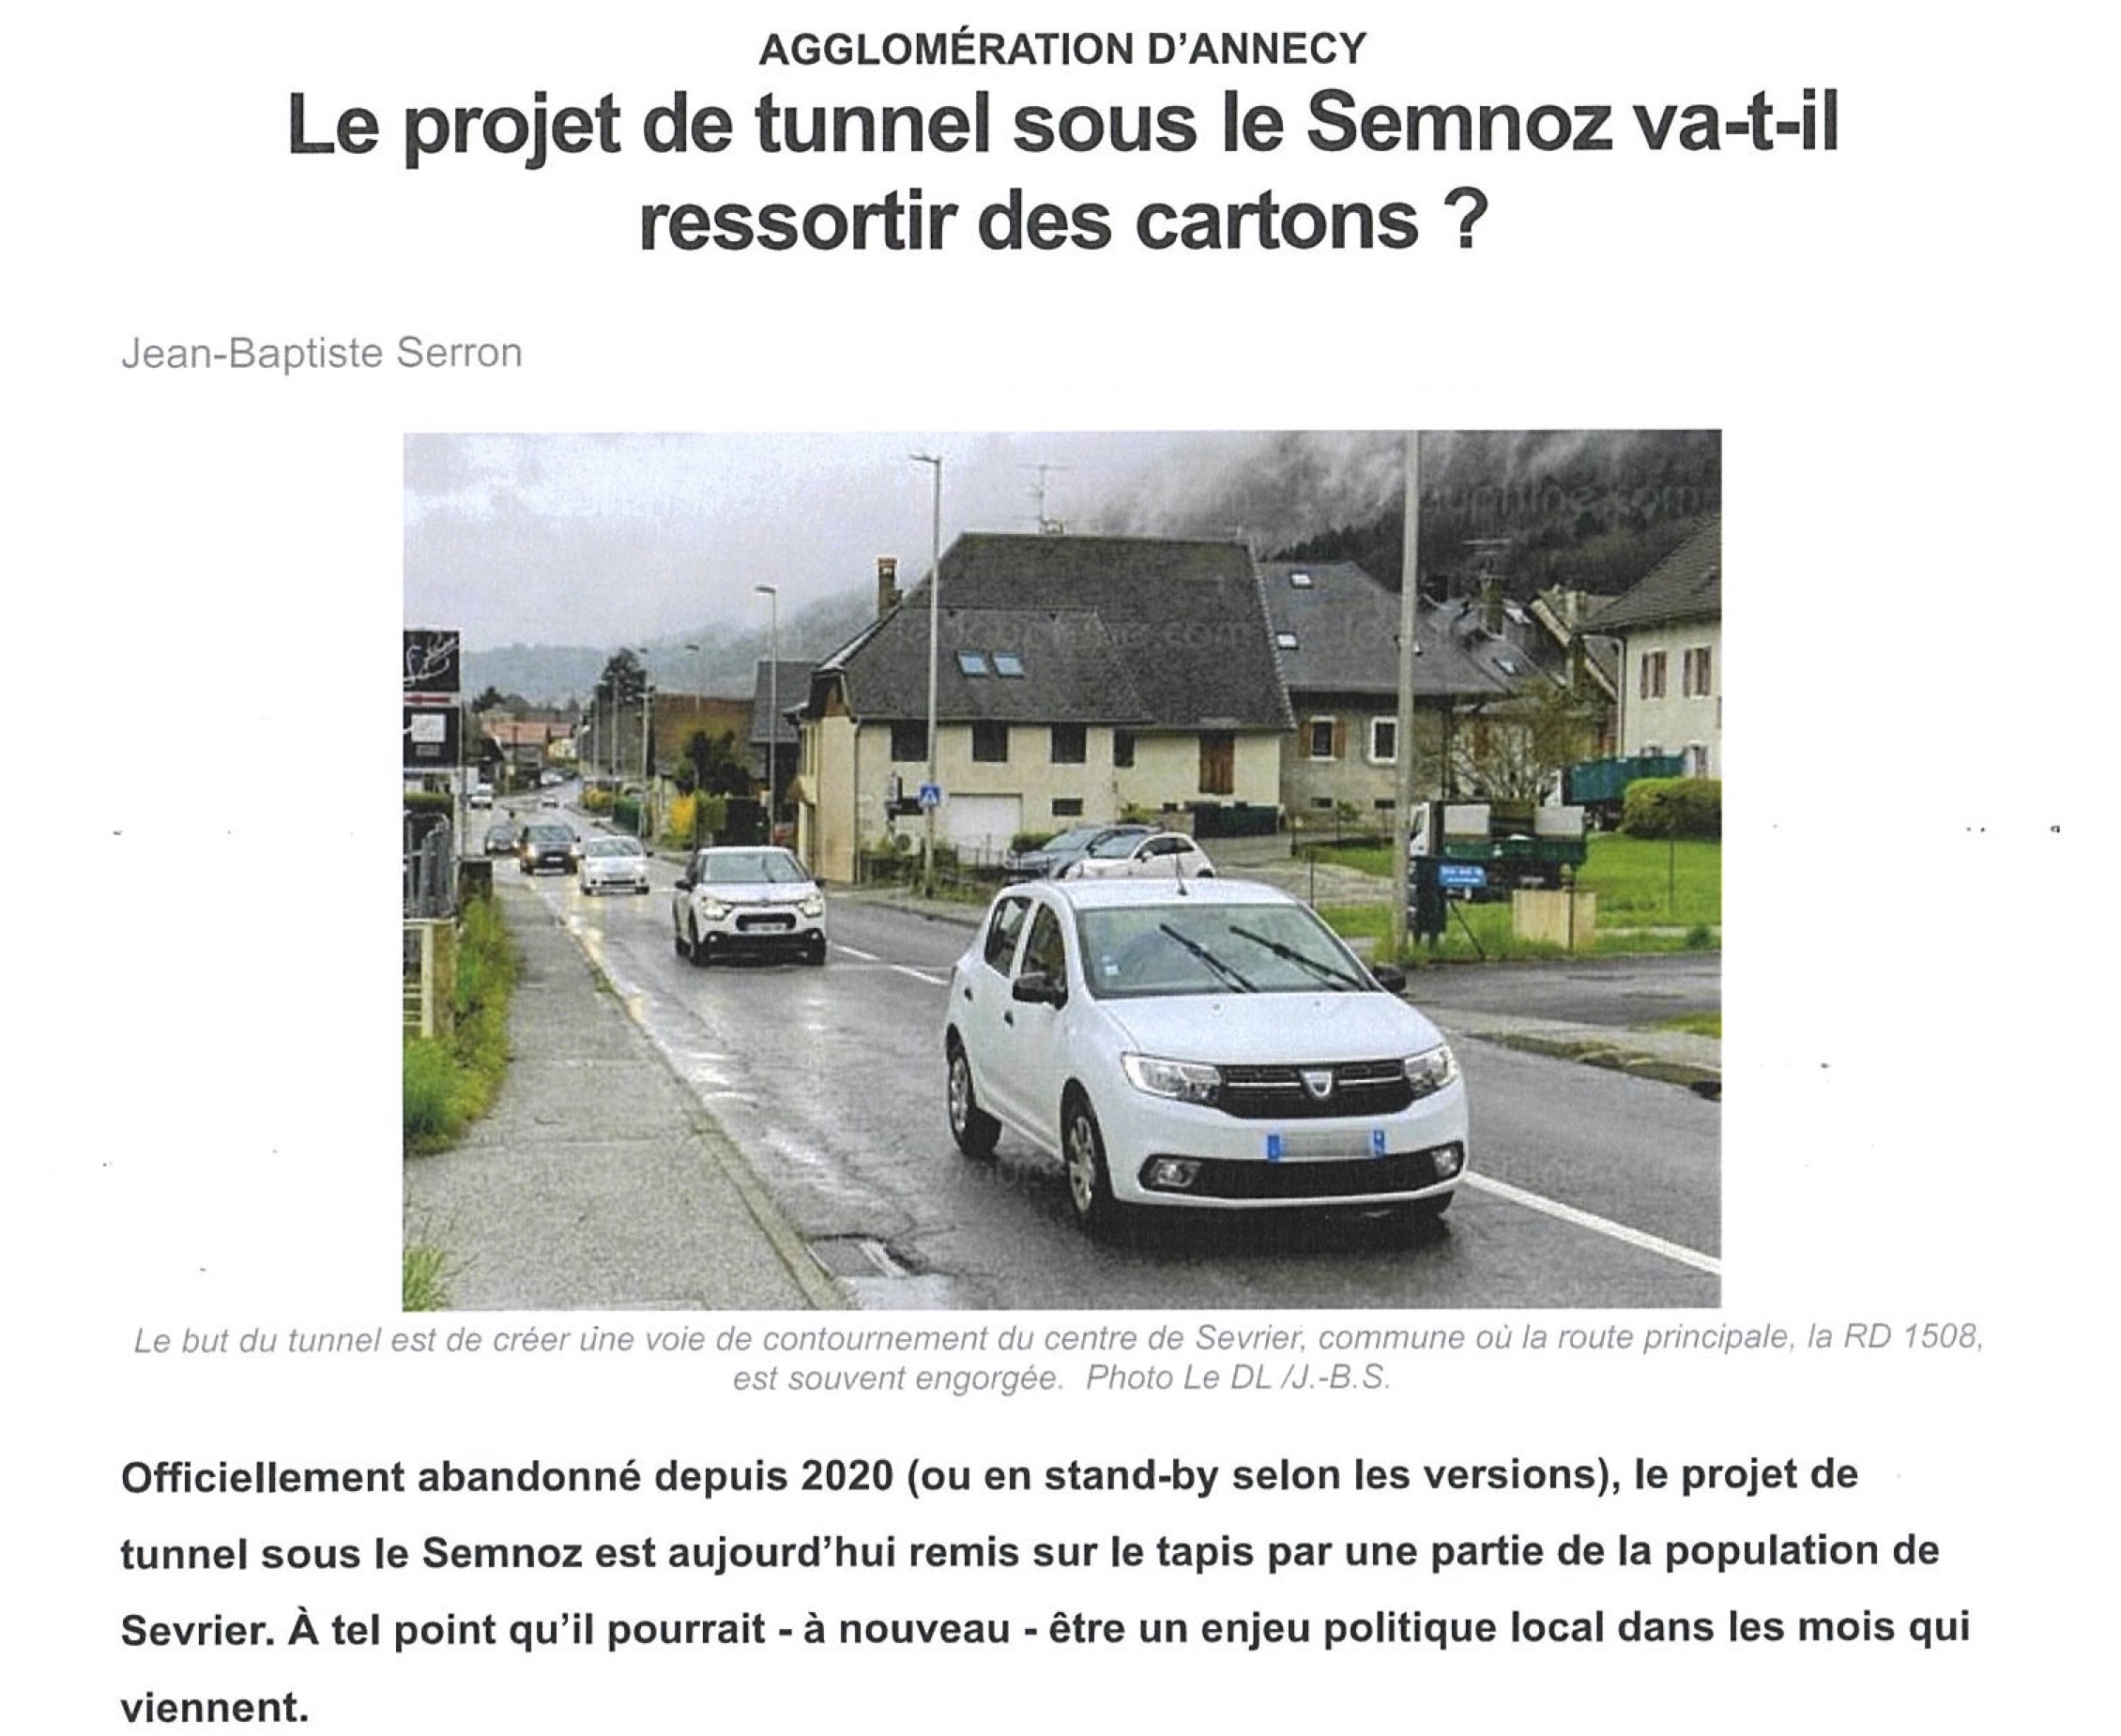 Le projet de tunnel sous le Semnoz va-t-il ressortir des cartons ?